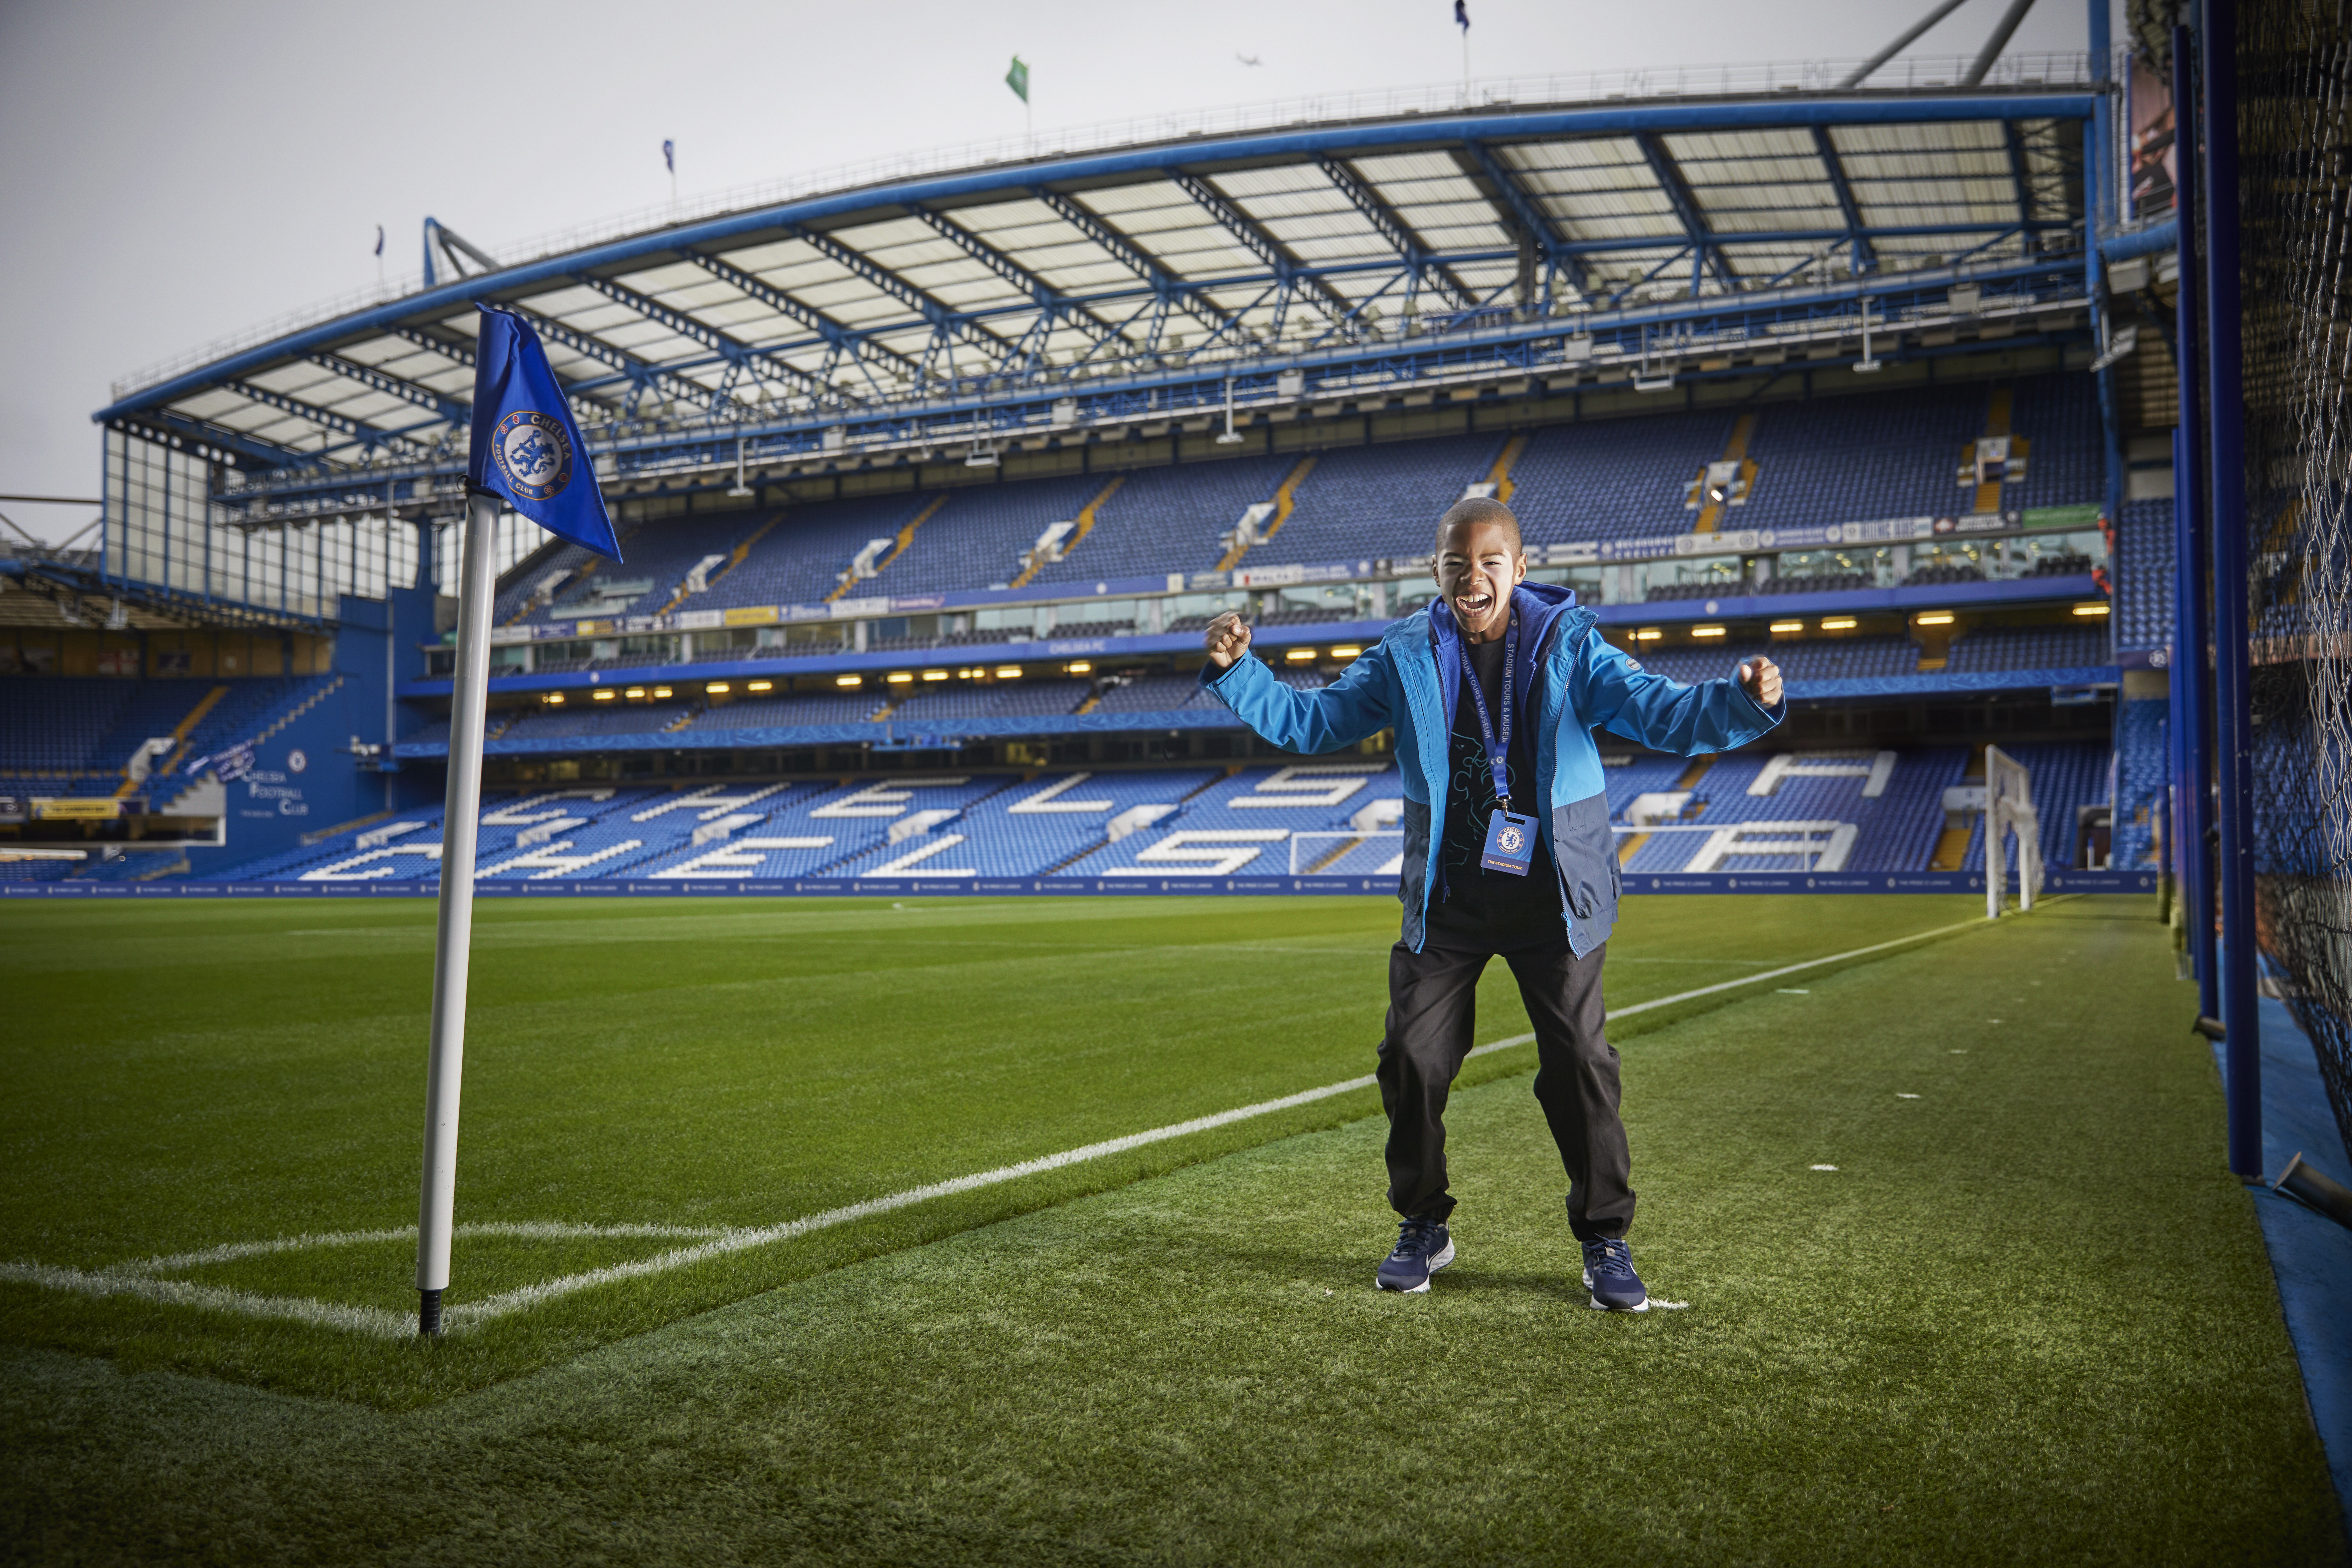 Chelsea FC Stadium Tour: FAQs